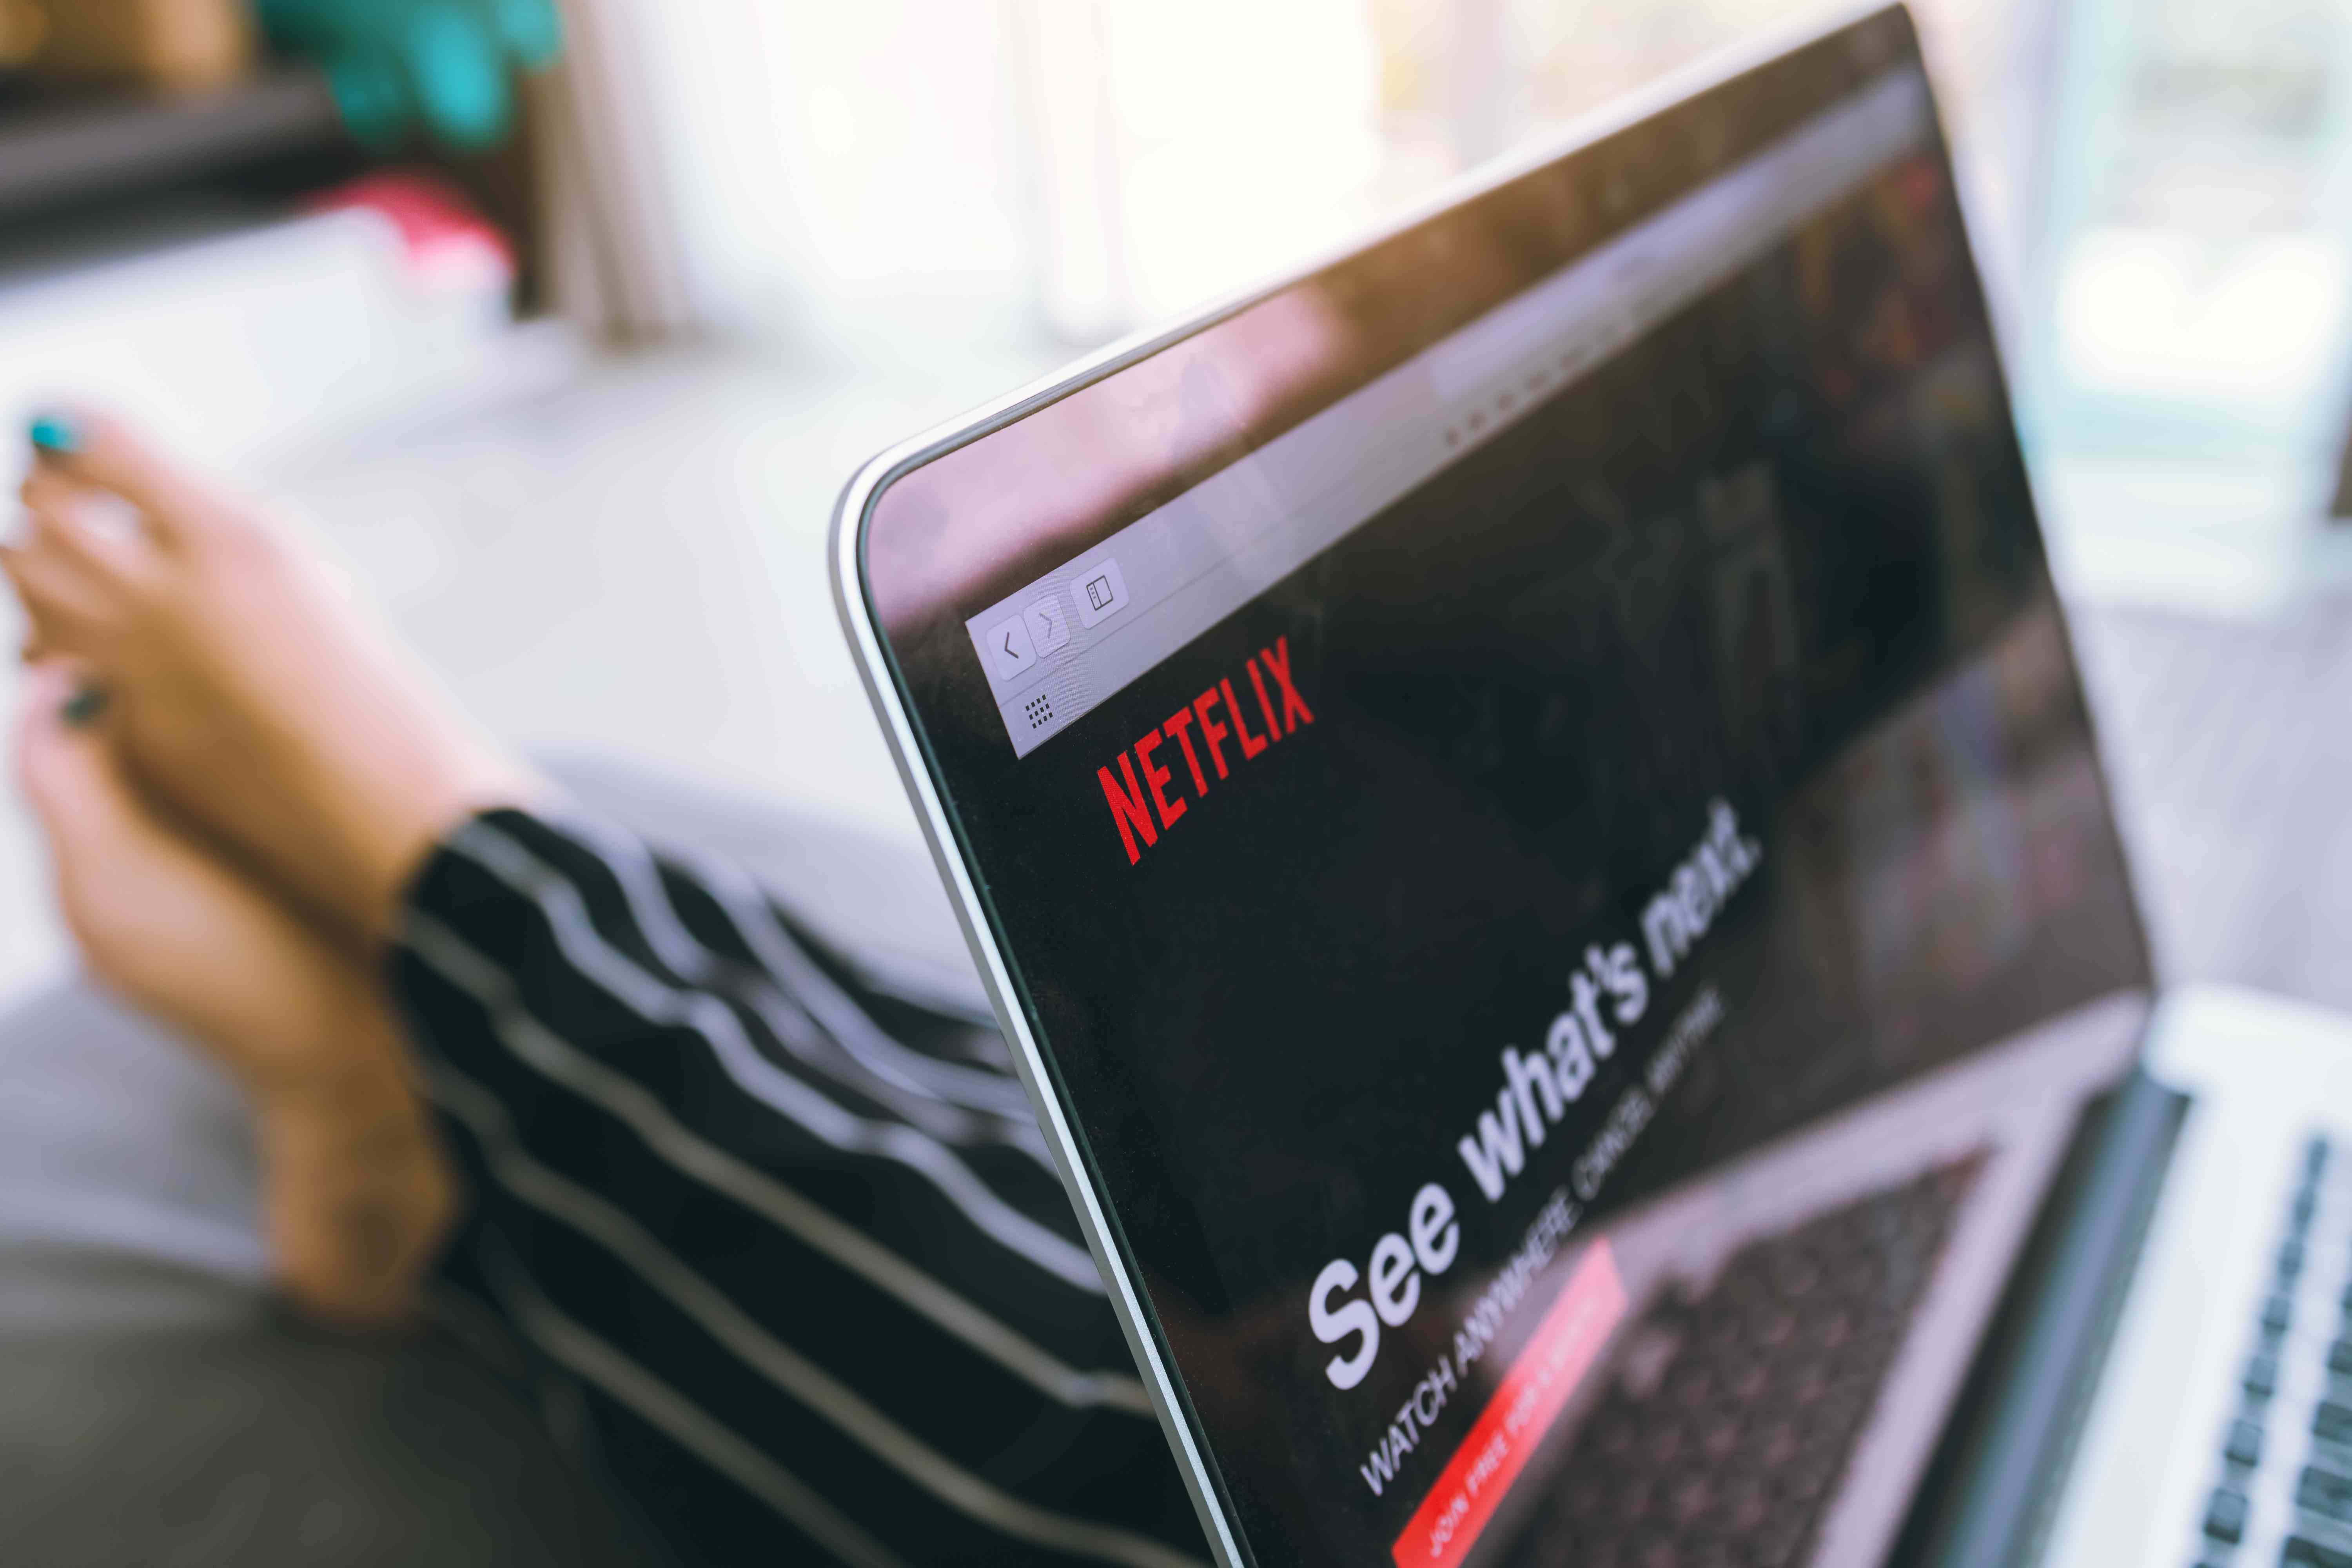 Lista actualizada: Códigos de Netflix para ver contenido oculto